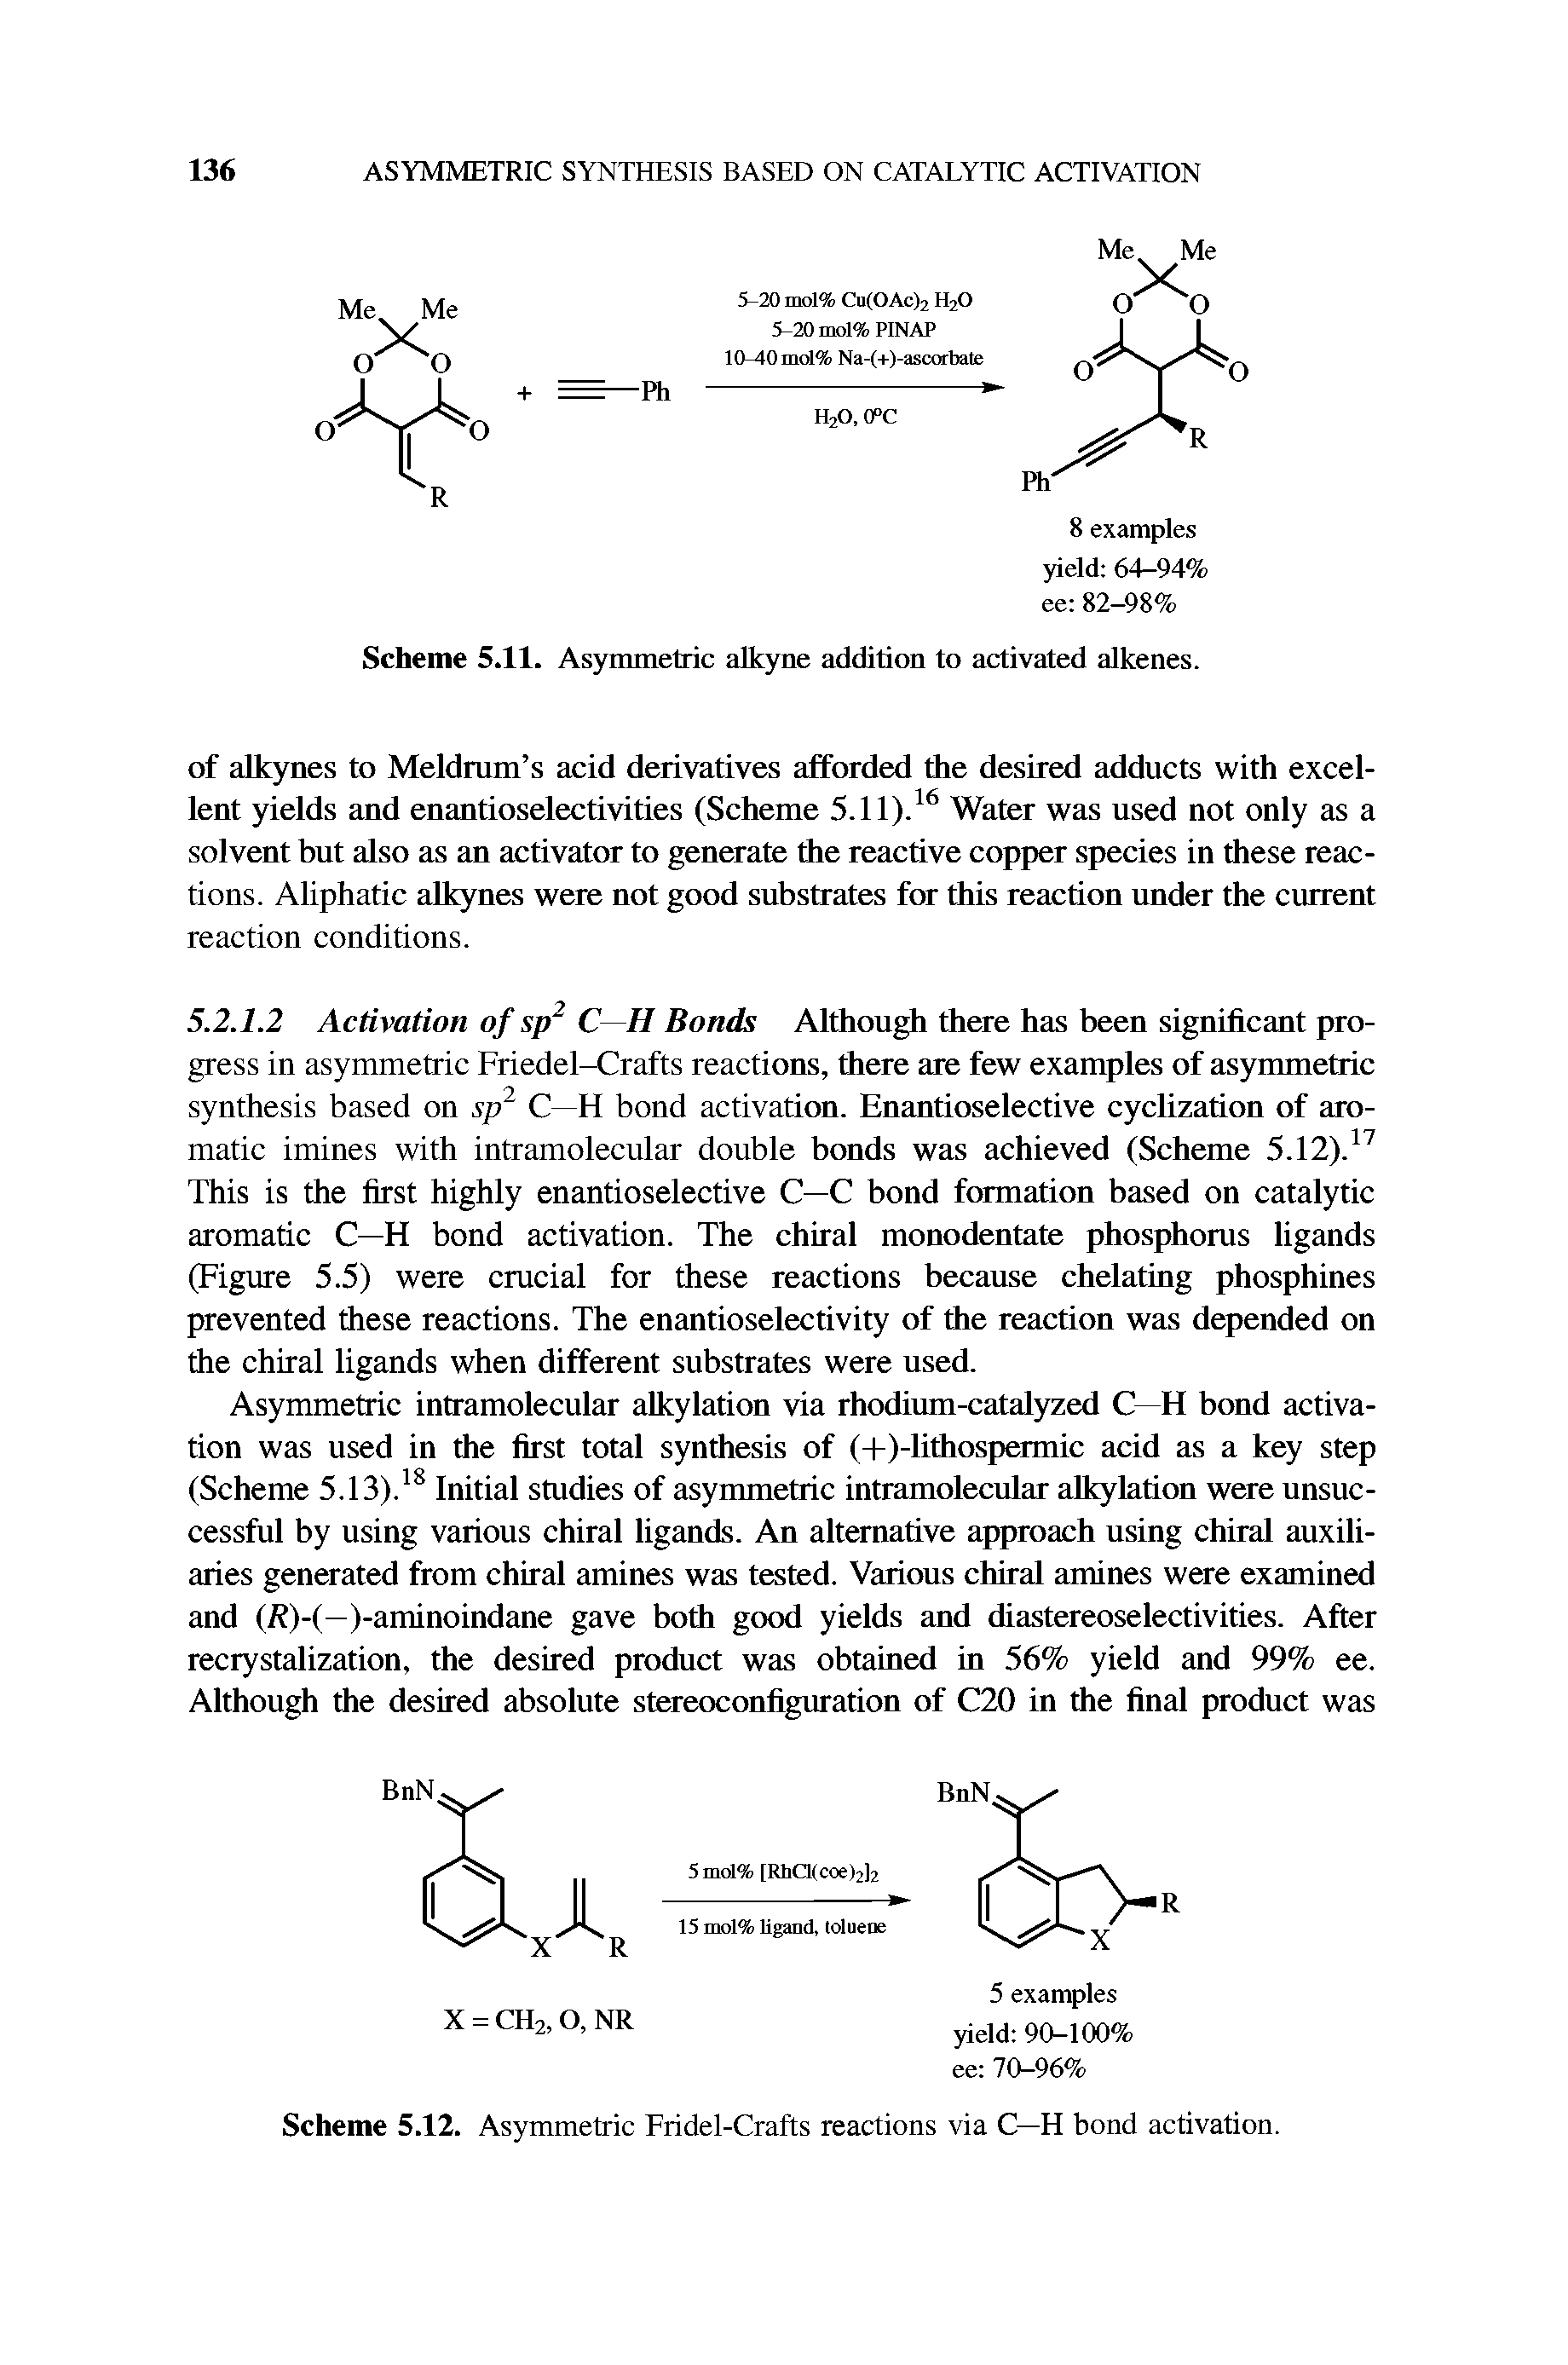 Scheme 5.12. Asymmetric Fridel-Crafts reactions via C—H bond activation.